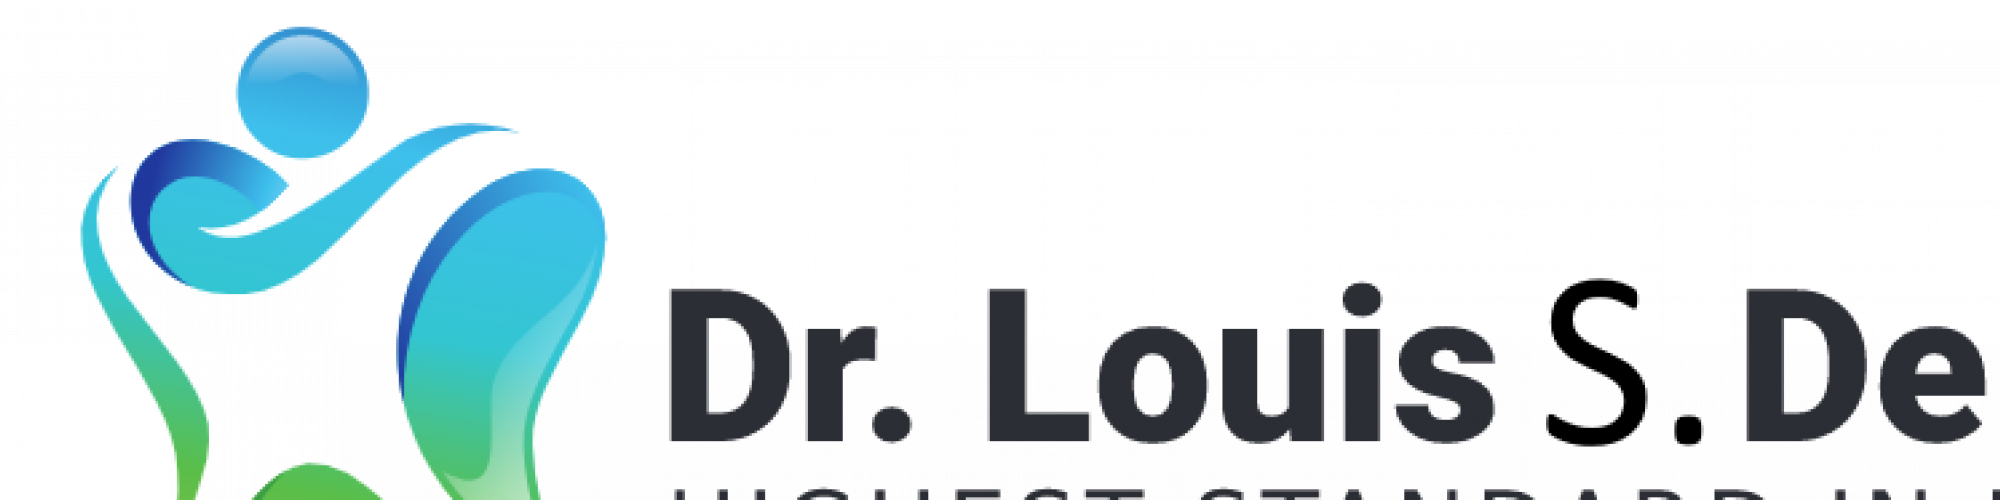 Dr Louis S Delorie DDS